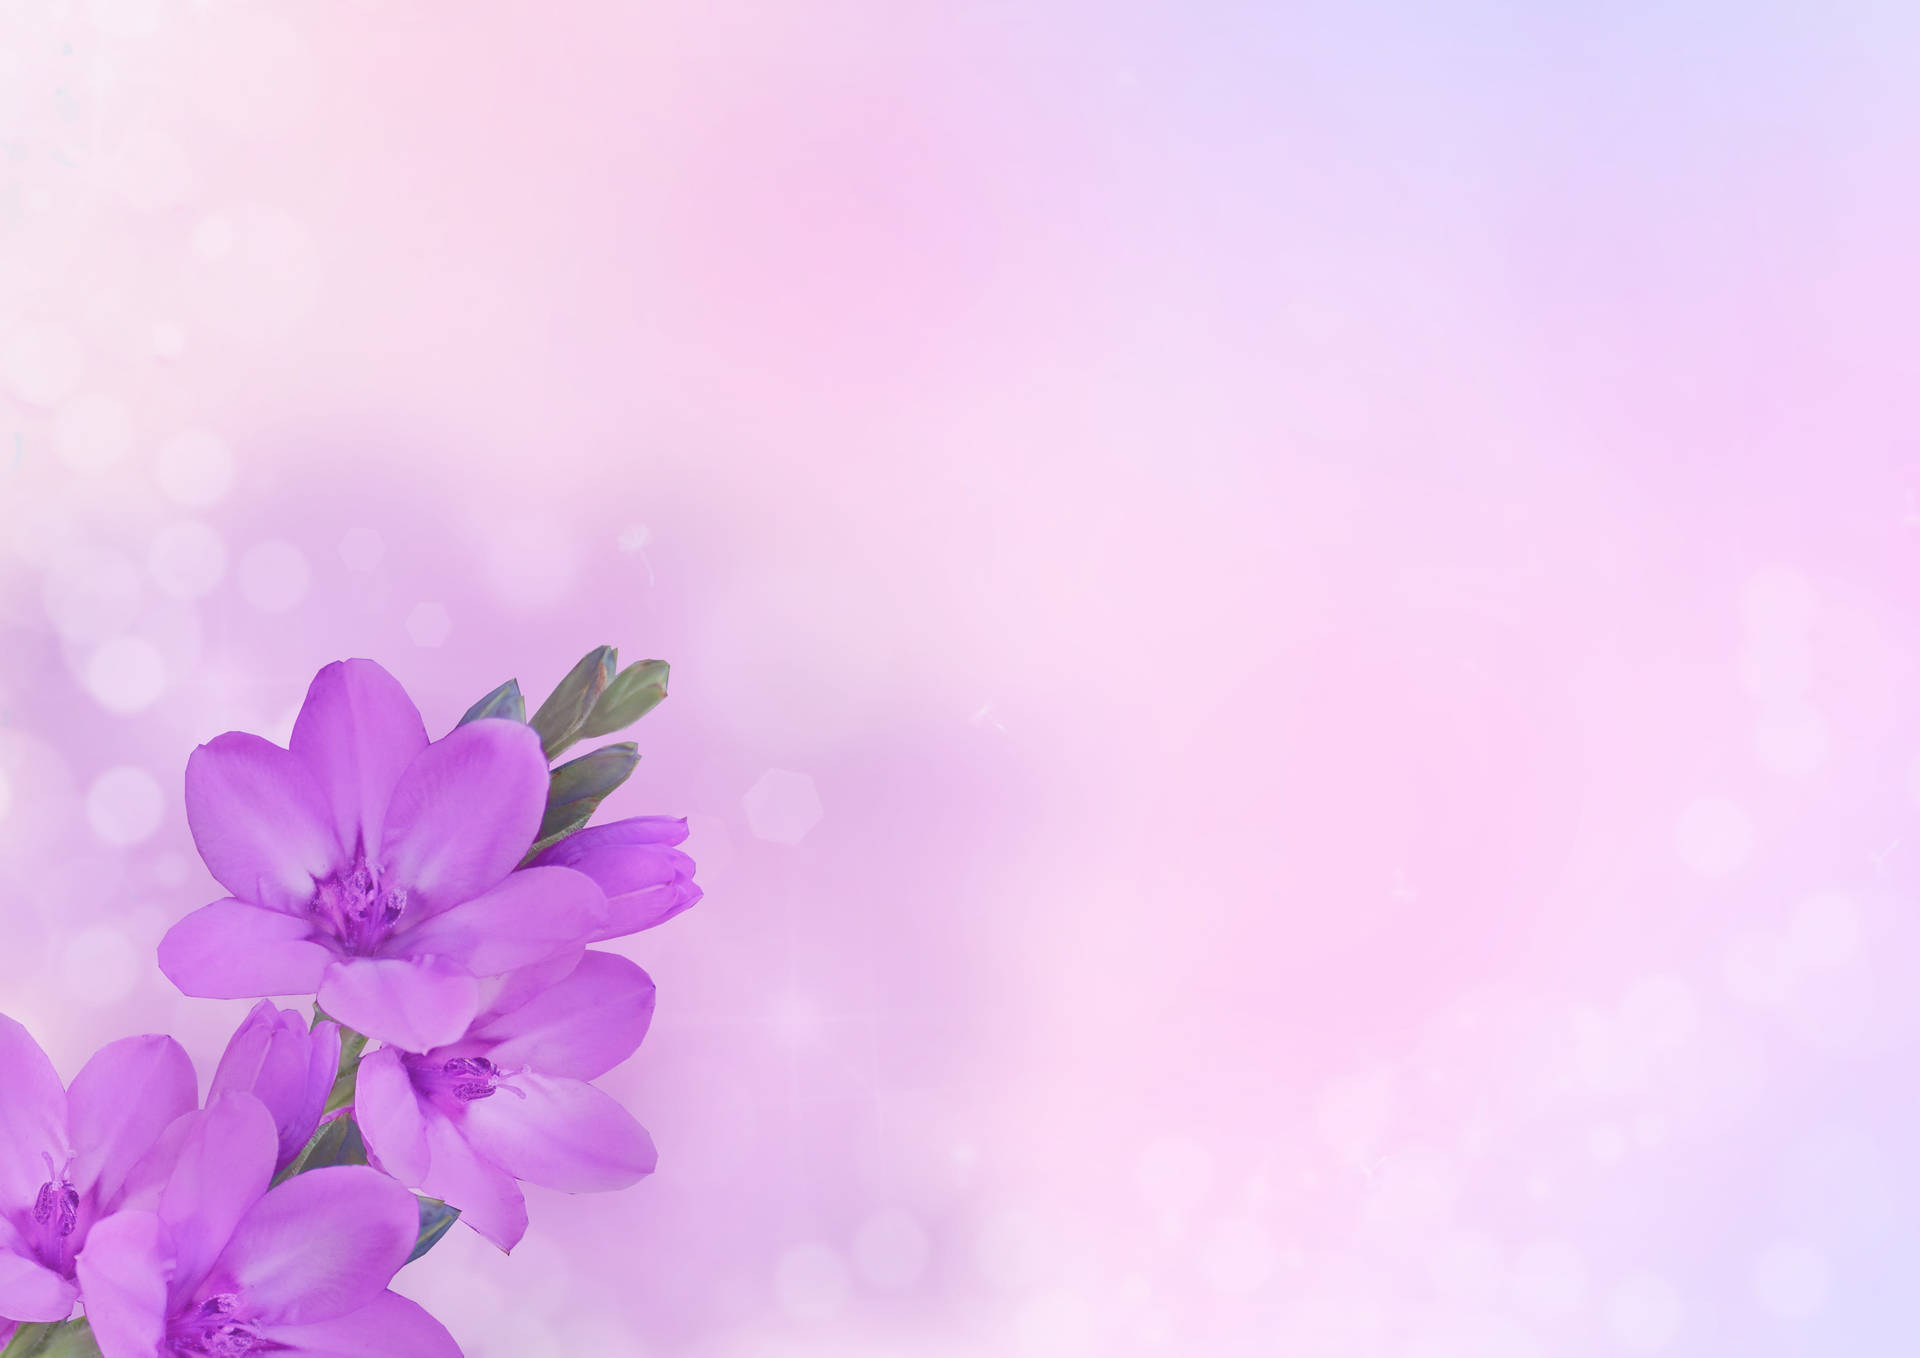 Violet Flower Pastels mang tới những gam màu nhẹ nhàng, tươi sáng, khiến chúng ta liên tưởng đến tình yêu, sự kiêu sa và sắc màu của mùa xuân. Hãy chiêm ngưỡng các hình ảnh đẹp tuyệt trong bộ sưu tập của chúng tôi.